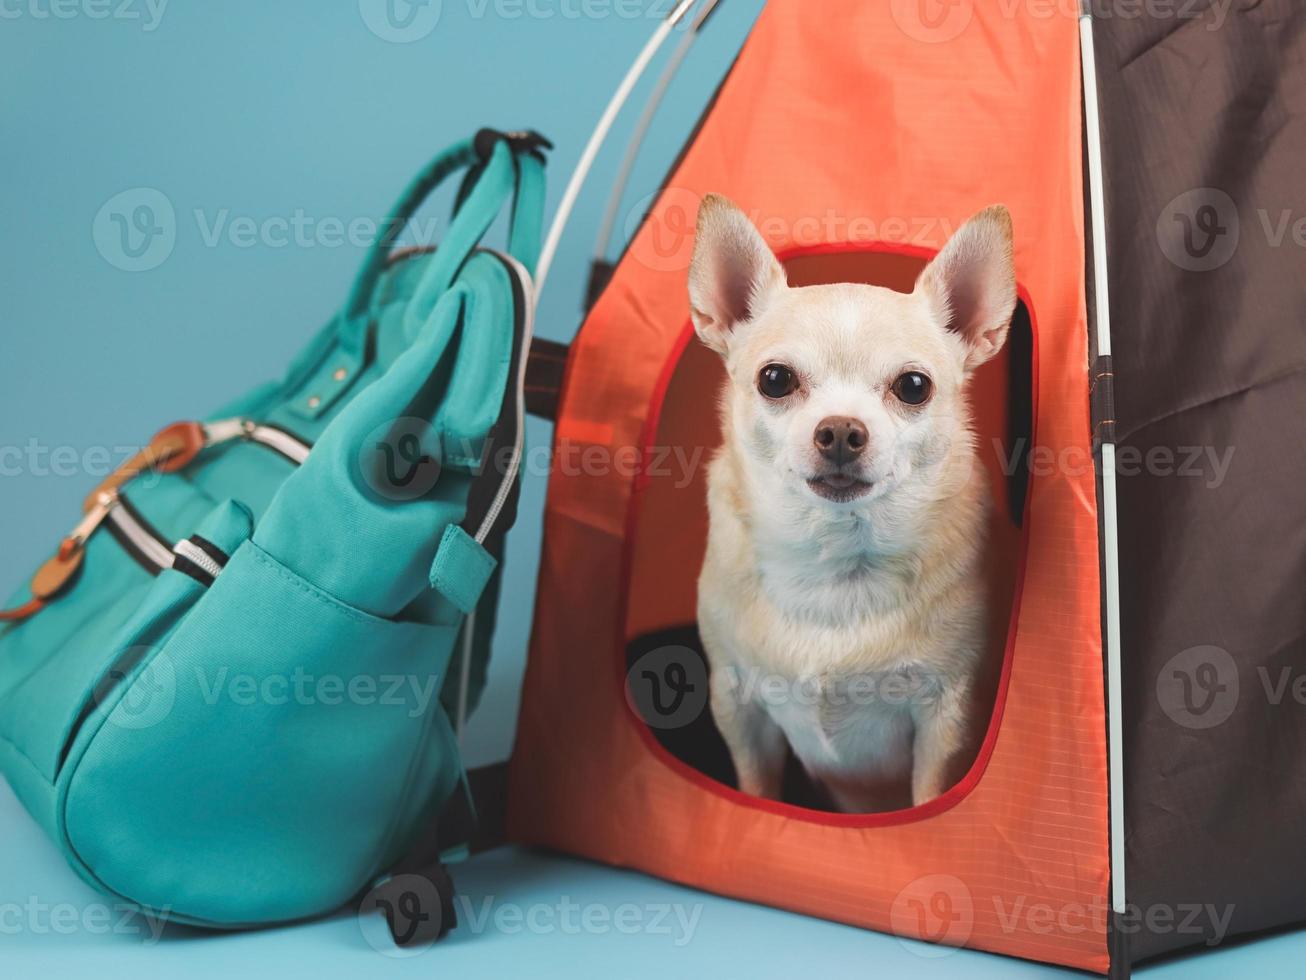 Perro chihuahua de pelo corto marrón sentado en una tienda de campaña naranja con mochila azul sobre fondo azul, mirando la cámara. concepto de viaje de mascotas. foto